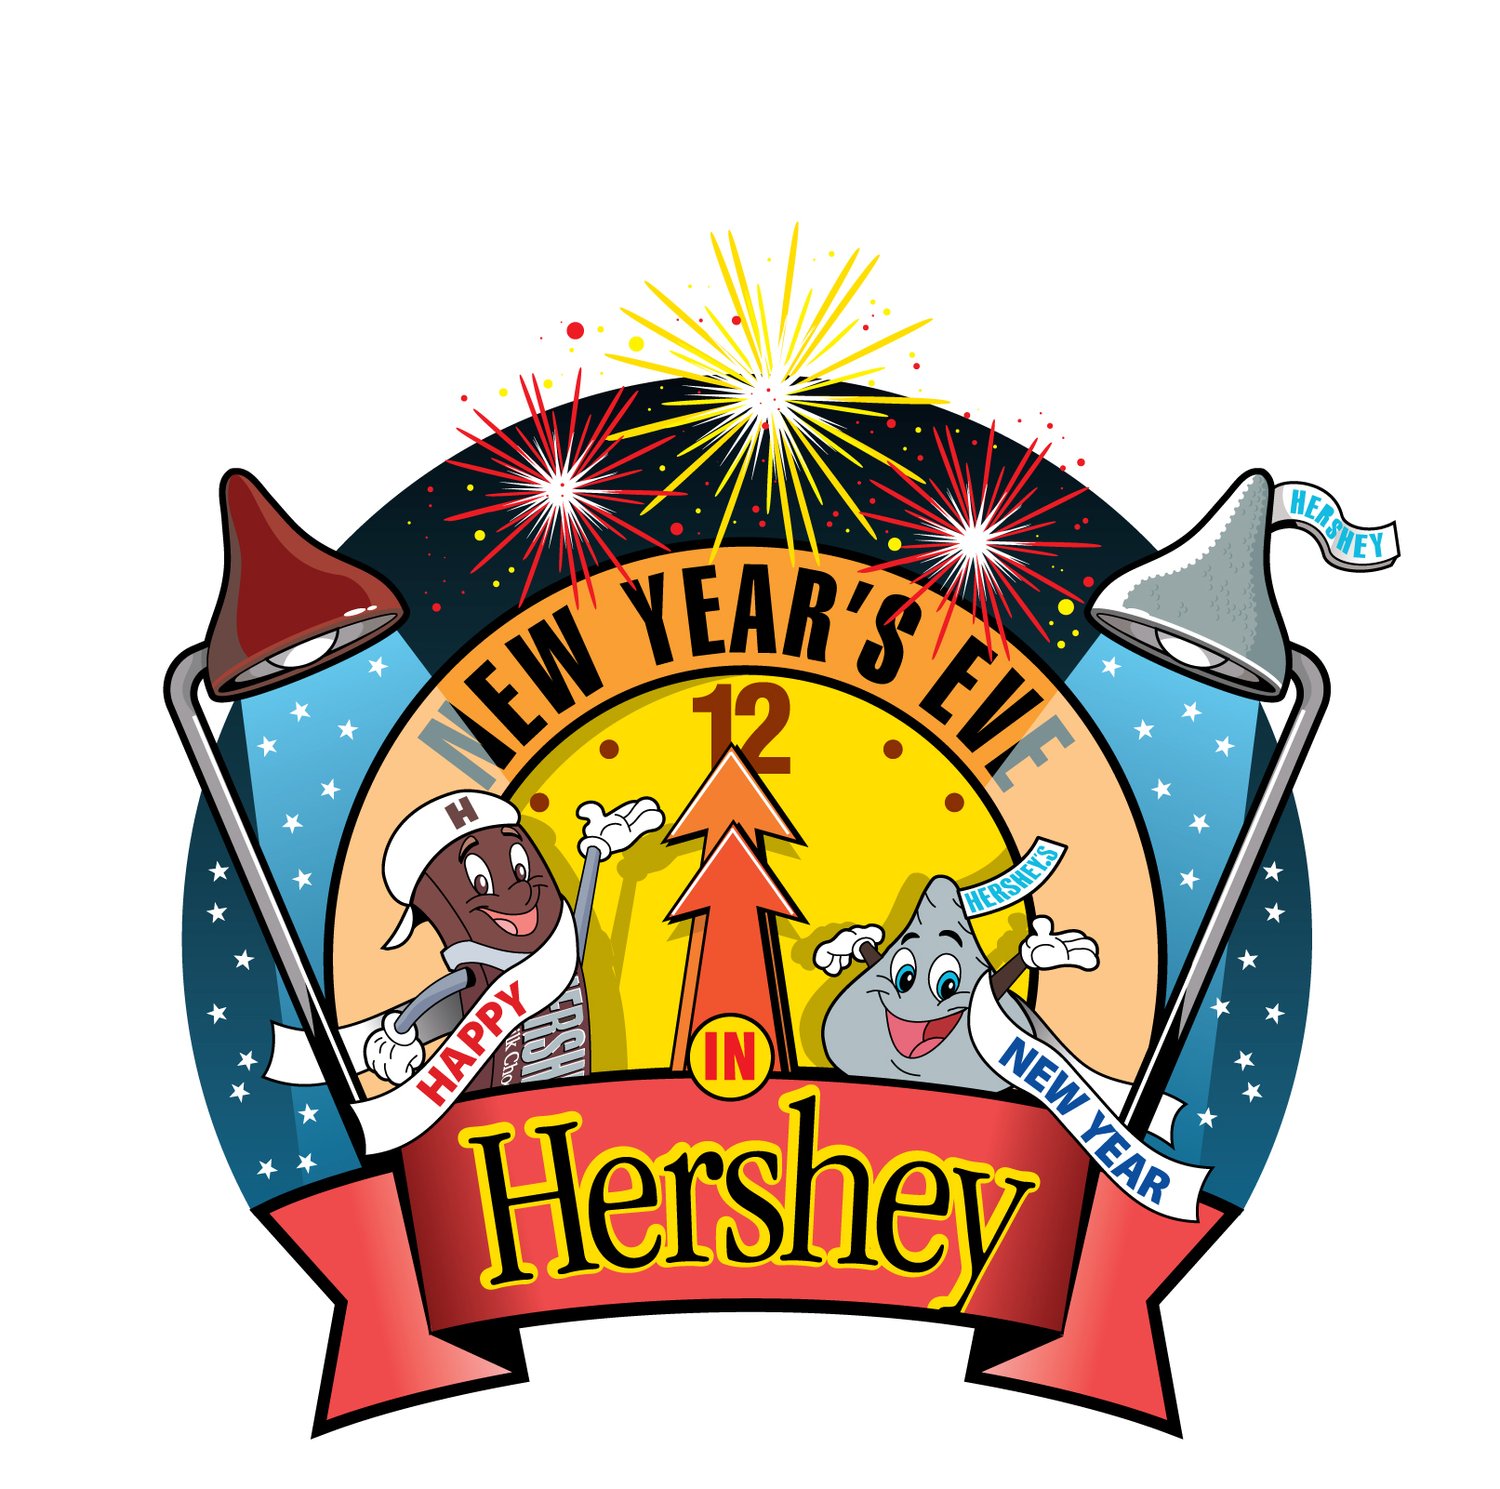 Hershey New Year's Eve